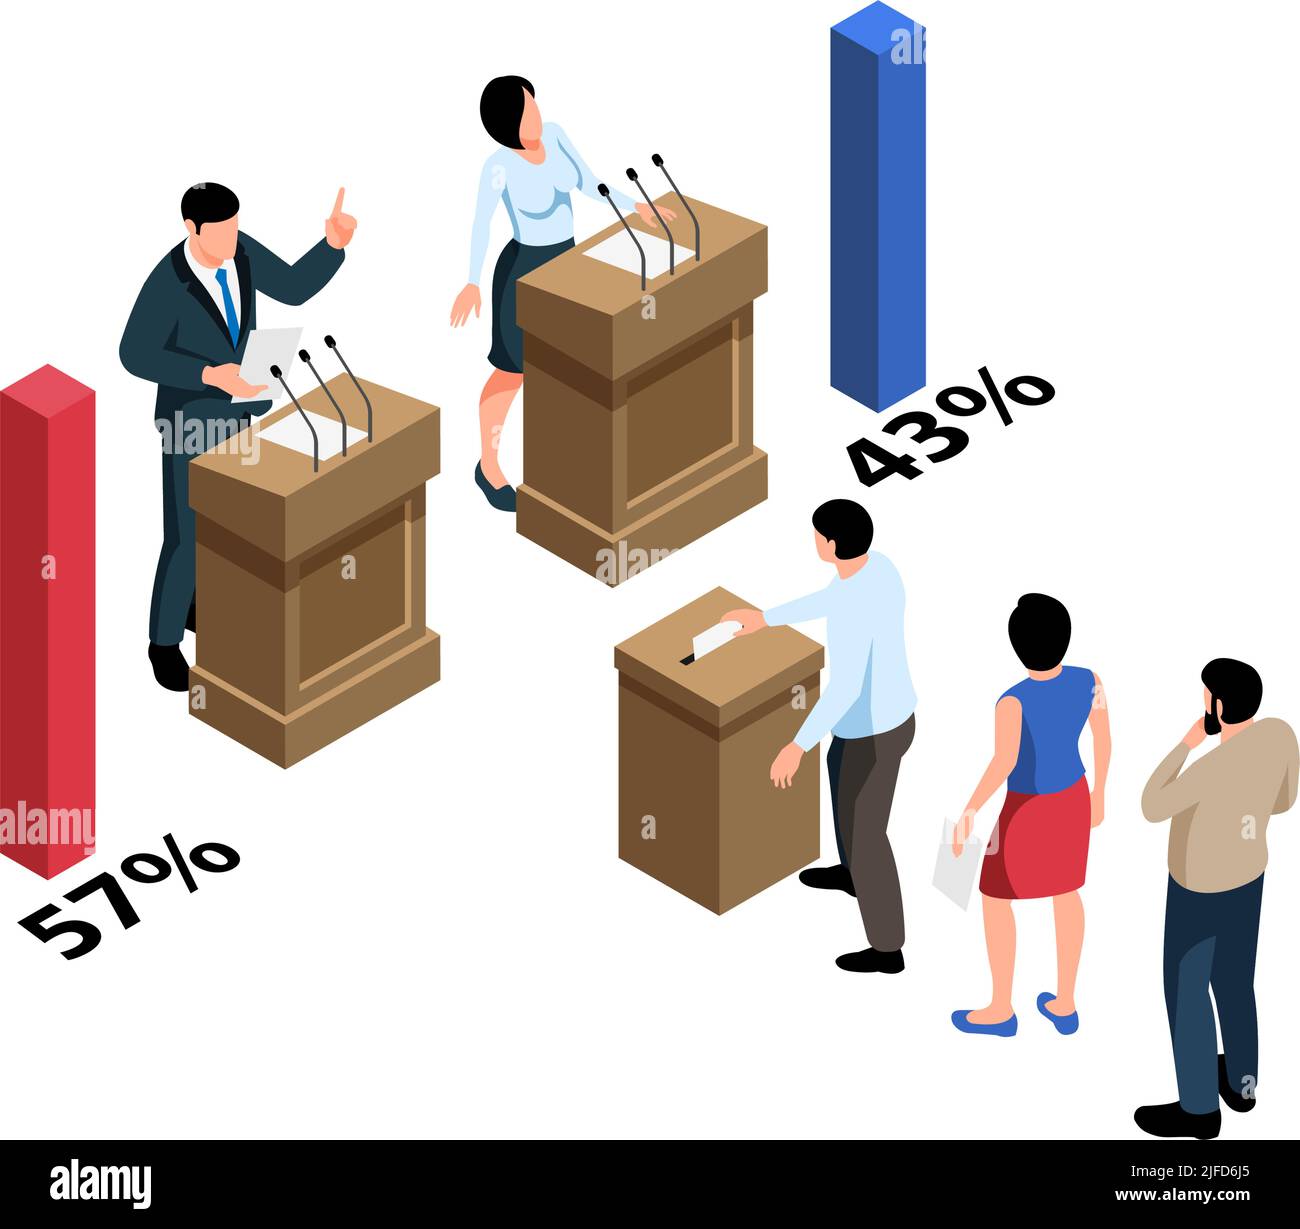 Wahl isometrische Zusammensetzung mit Zeichen der Kandidaten und Wähler Vektor Illustration Stock Vektor